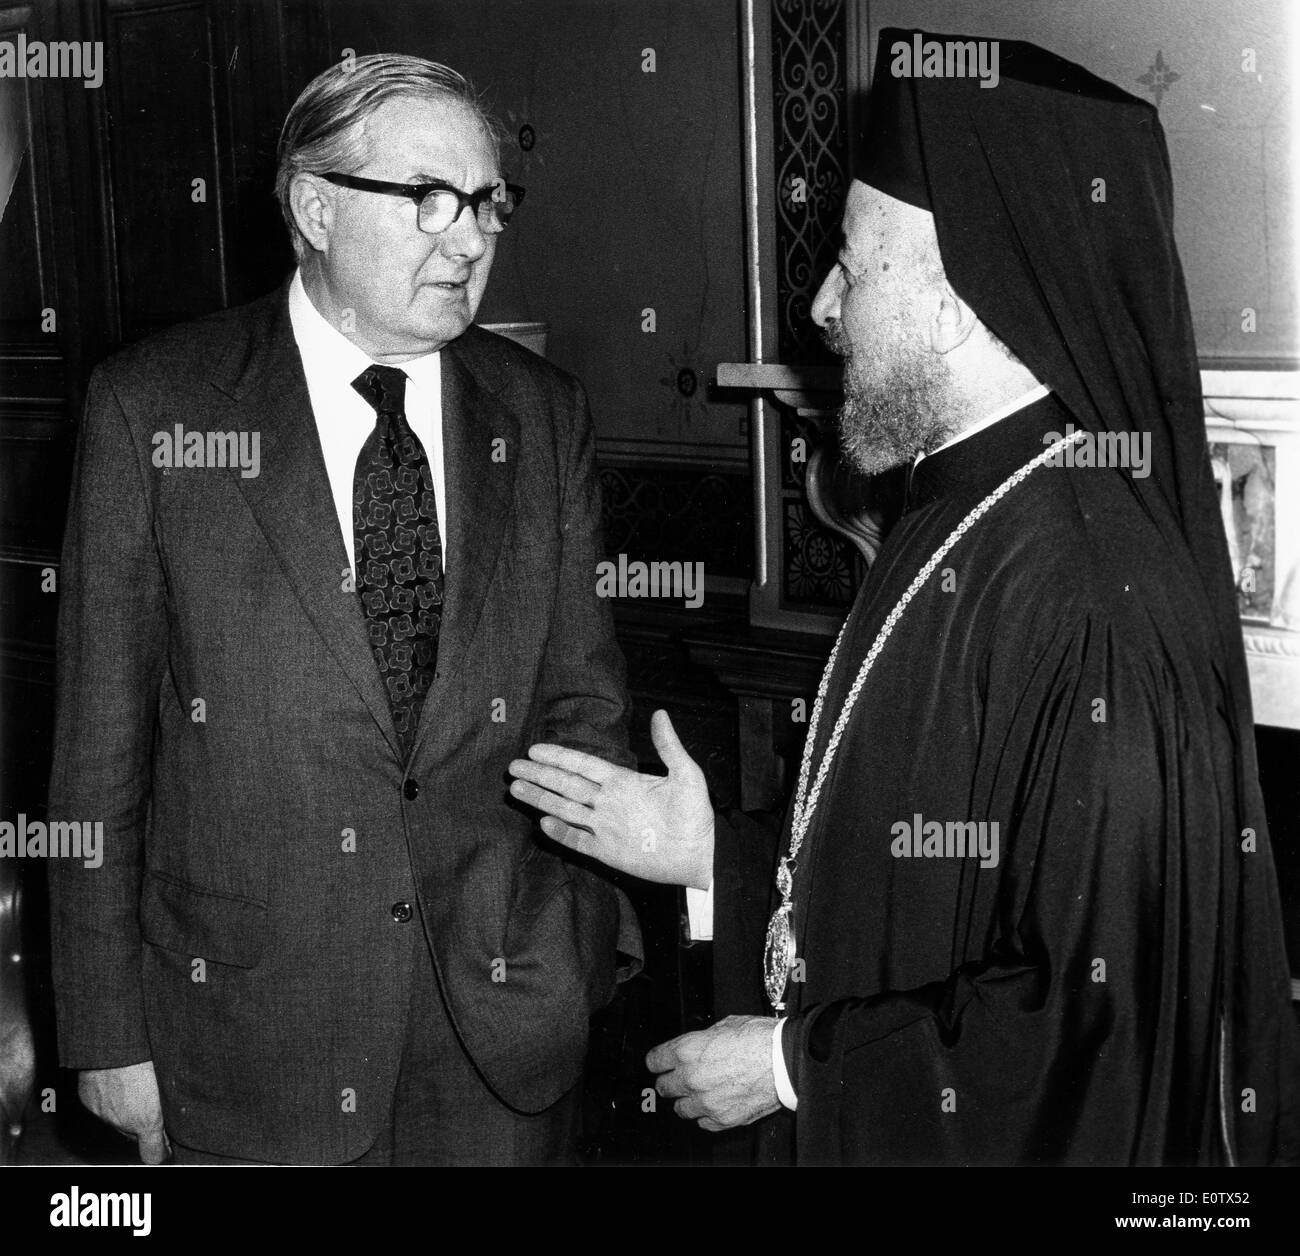 Archbishop Makarios III talks with James Callaghan Stock Photo